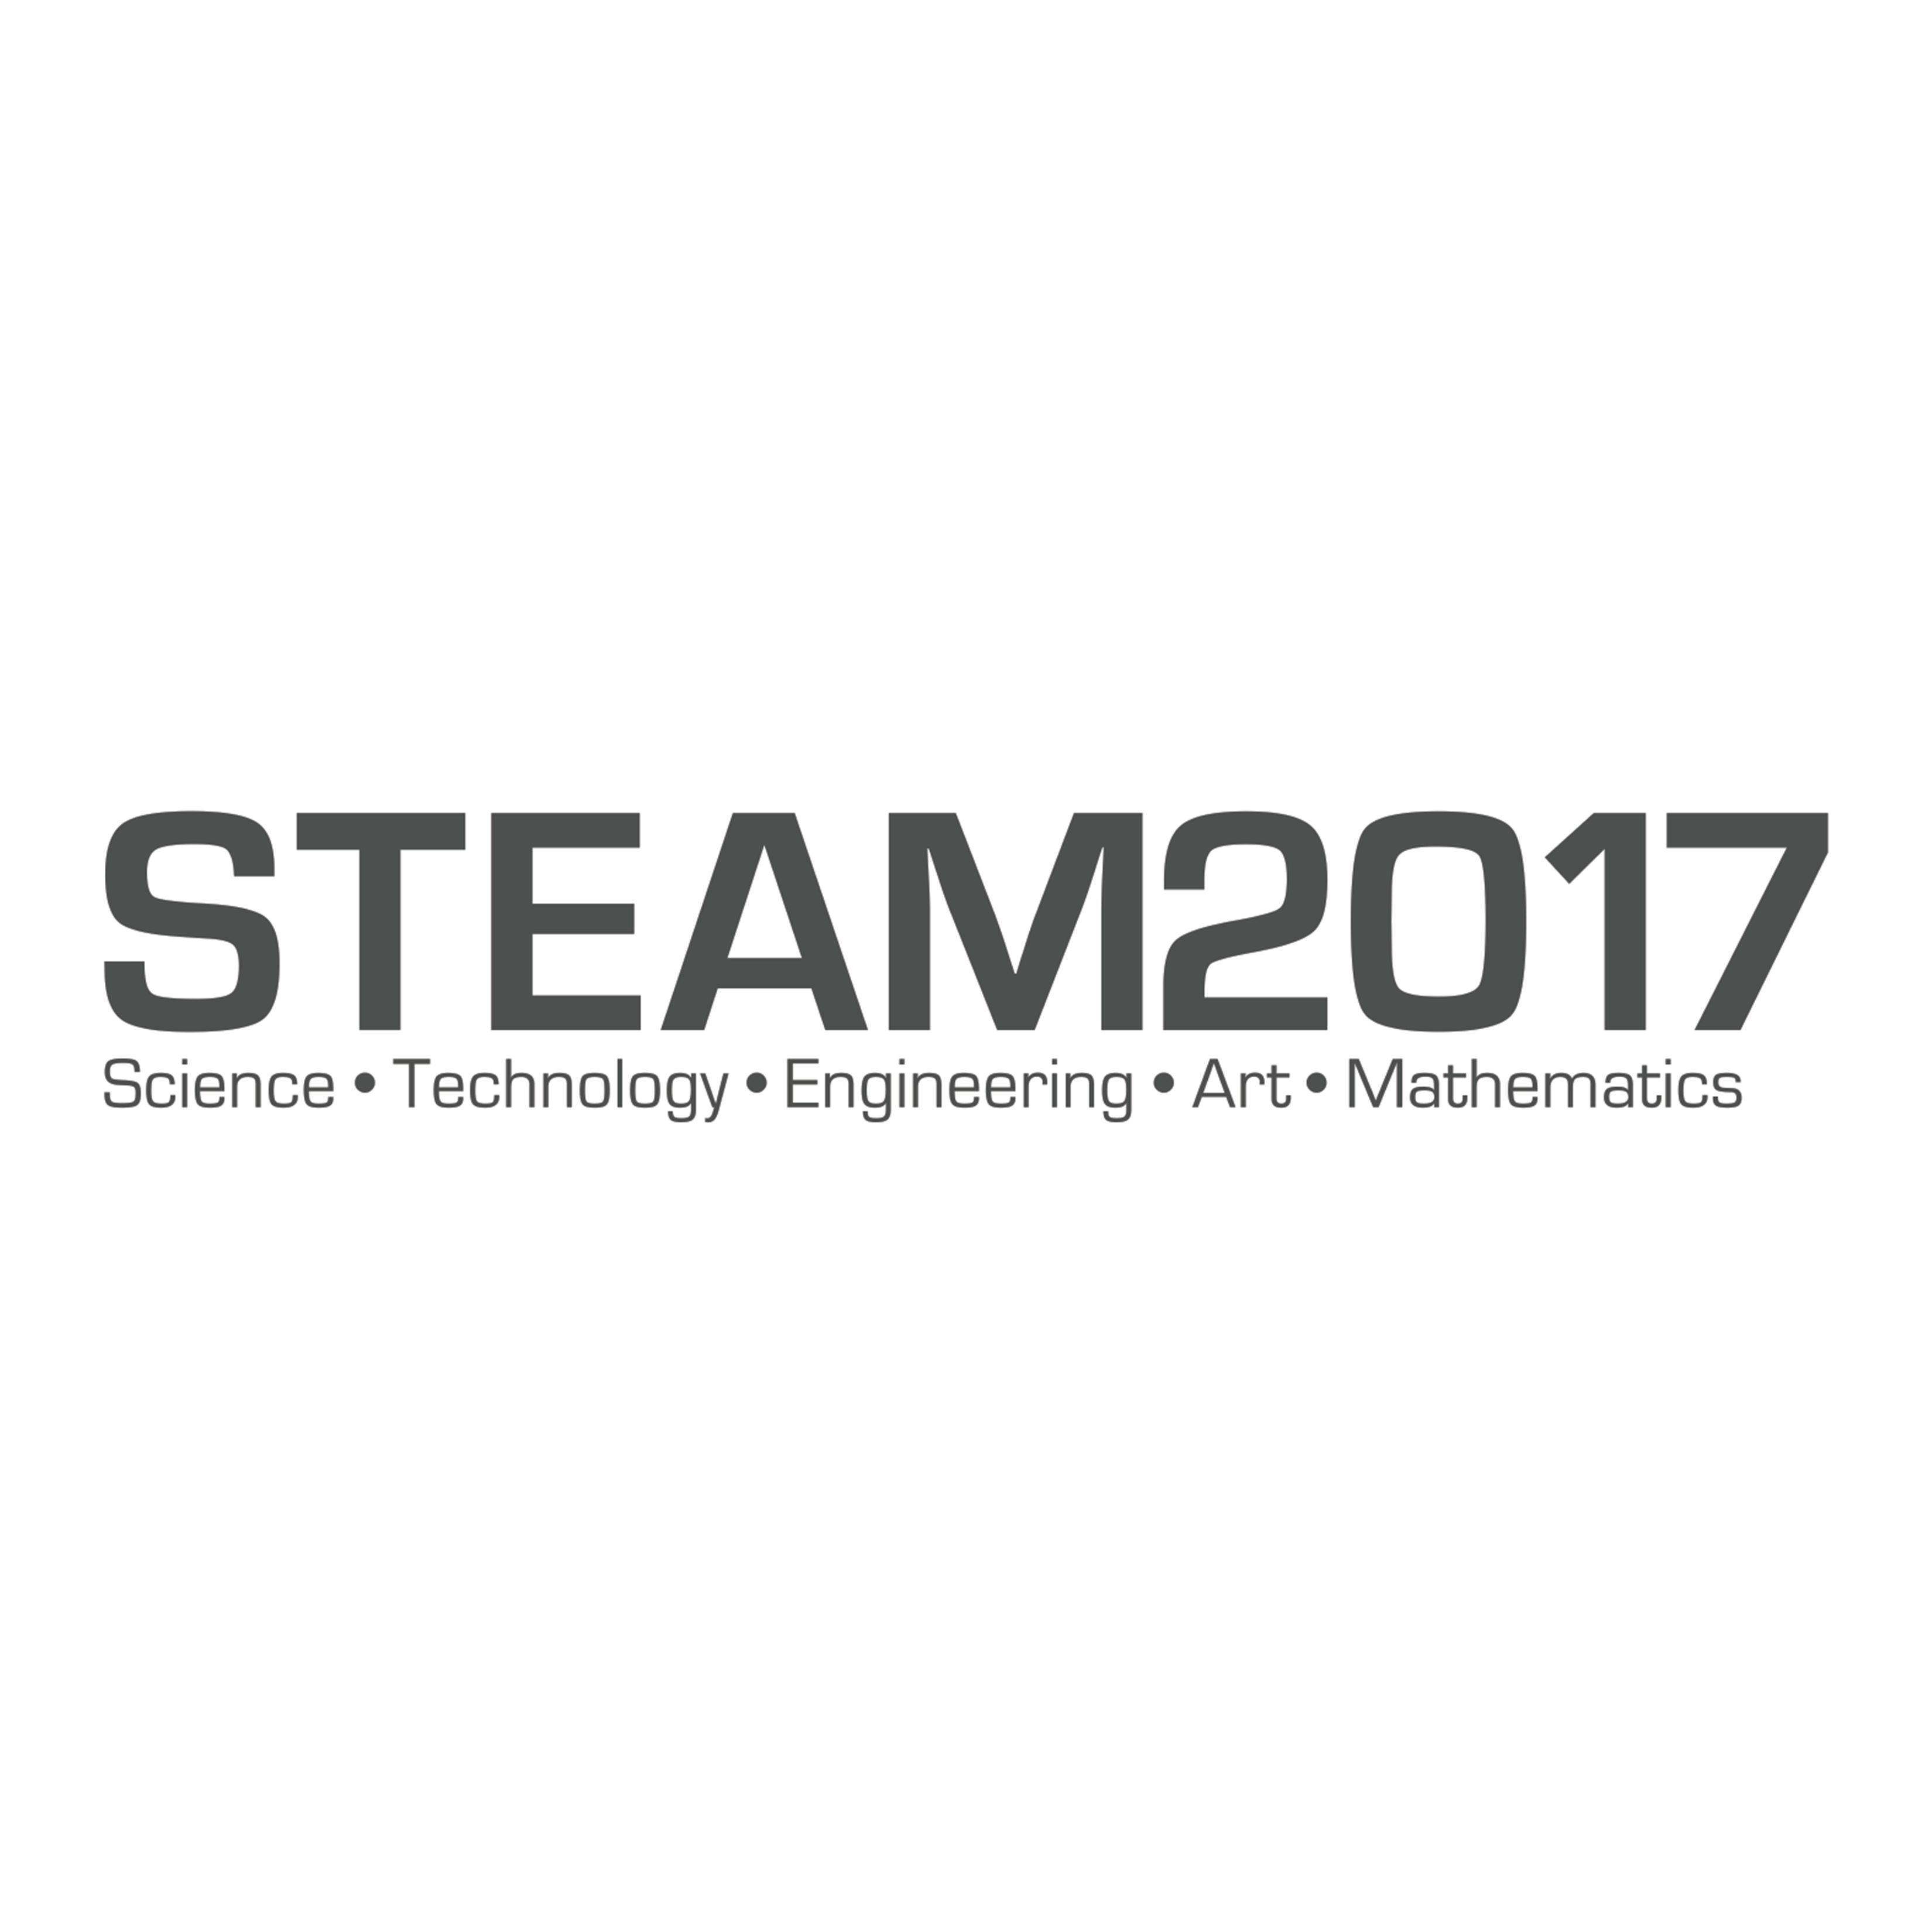 STEAM2017 Exhibition graphic design